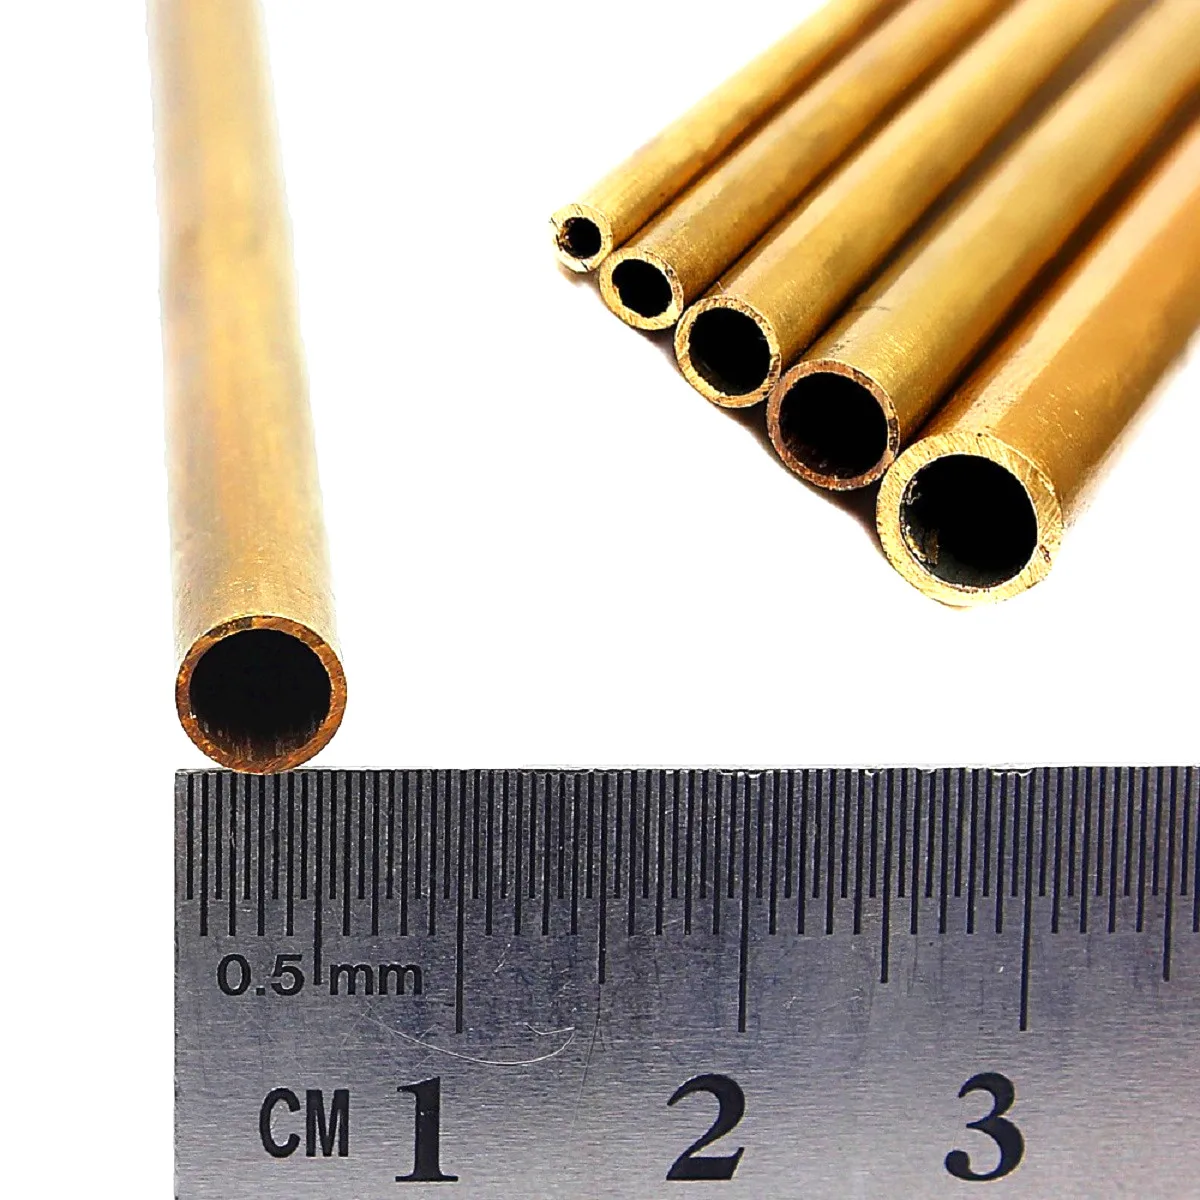 Мм диам 8 мм. Трубка латунная внутренний диам 2. Трубки латунные диаметром 5.0-12.0 мм. Трубки диаметр 4.2 мм. Трубка латунь 6 мм.